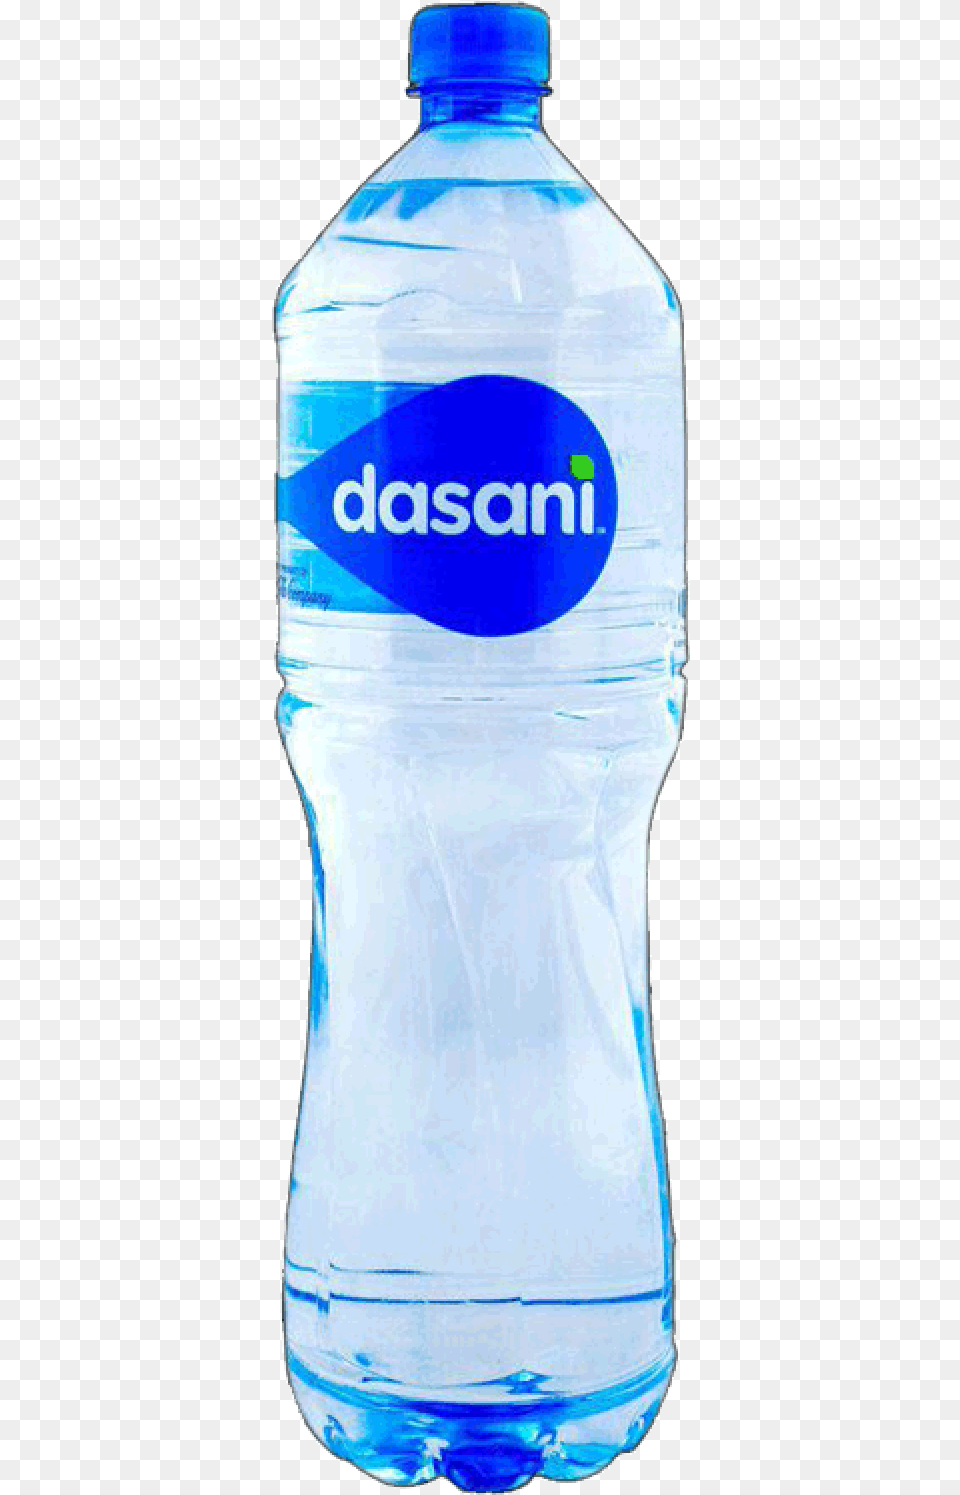 Dasani Water Bottle New Dasani Water Bottle, Water Bottle, Beverage, Mineral Water, Shaker Png